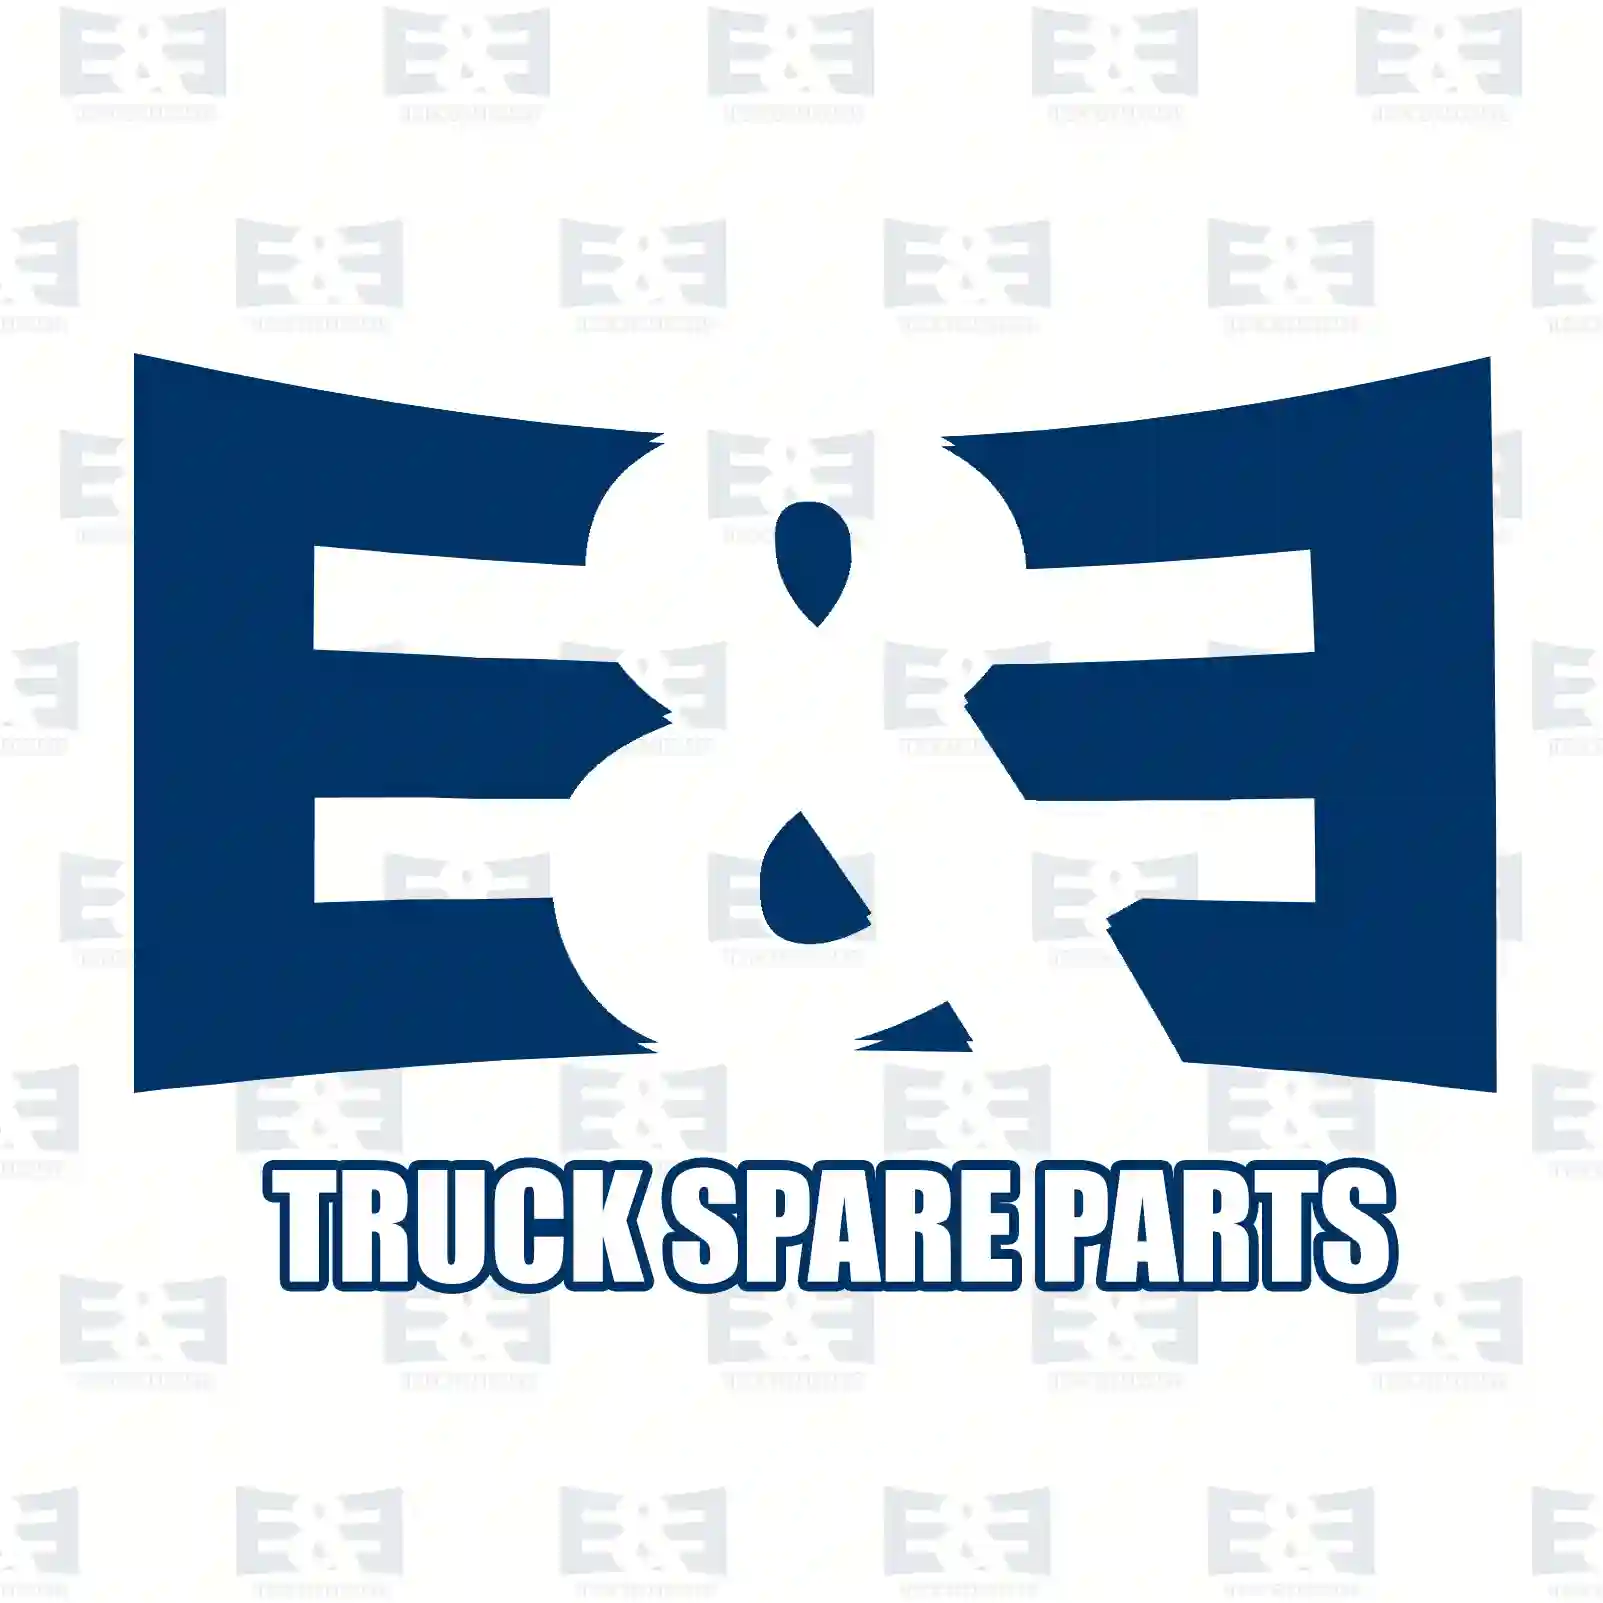 Gear shift rod, 2E2277321, 1373786, 1373789, 1414102, 1426263, 1515118, ZG30546-0008 ||  2E2277321 E&E Truck Spare Parts | Truck Spare Parts, Auotomotive Spare Parts Gear shift rod, 2E2277321, 1373786, 1373789, 1414102, 1426263, 1515118, ZG30546-0008 ||  2E2277321 E&E Truck Spare Parts | Truck Spare Parts, Auotomotive Spare Parts